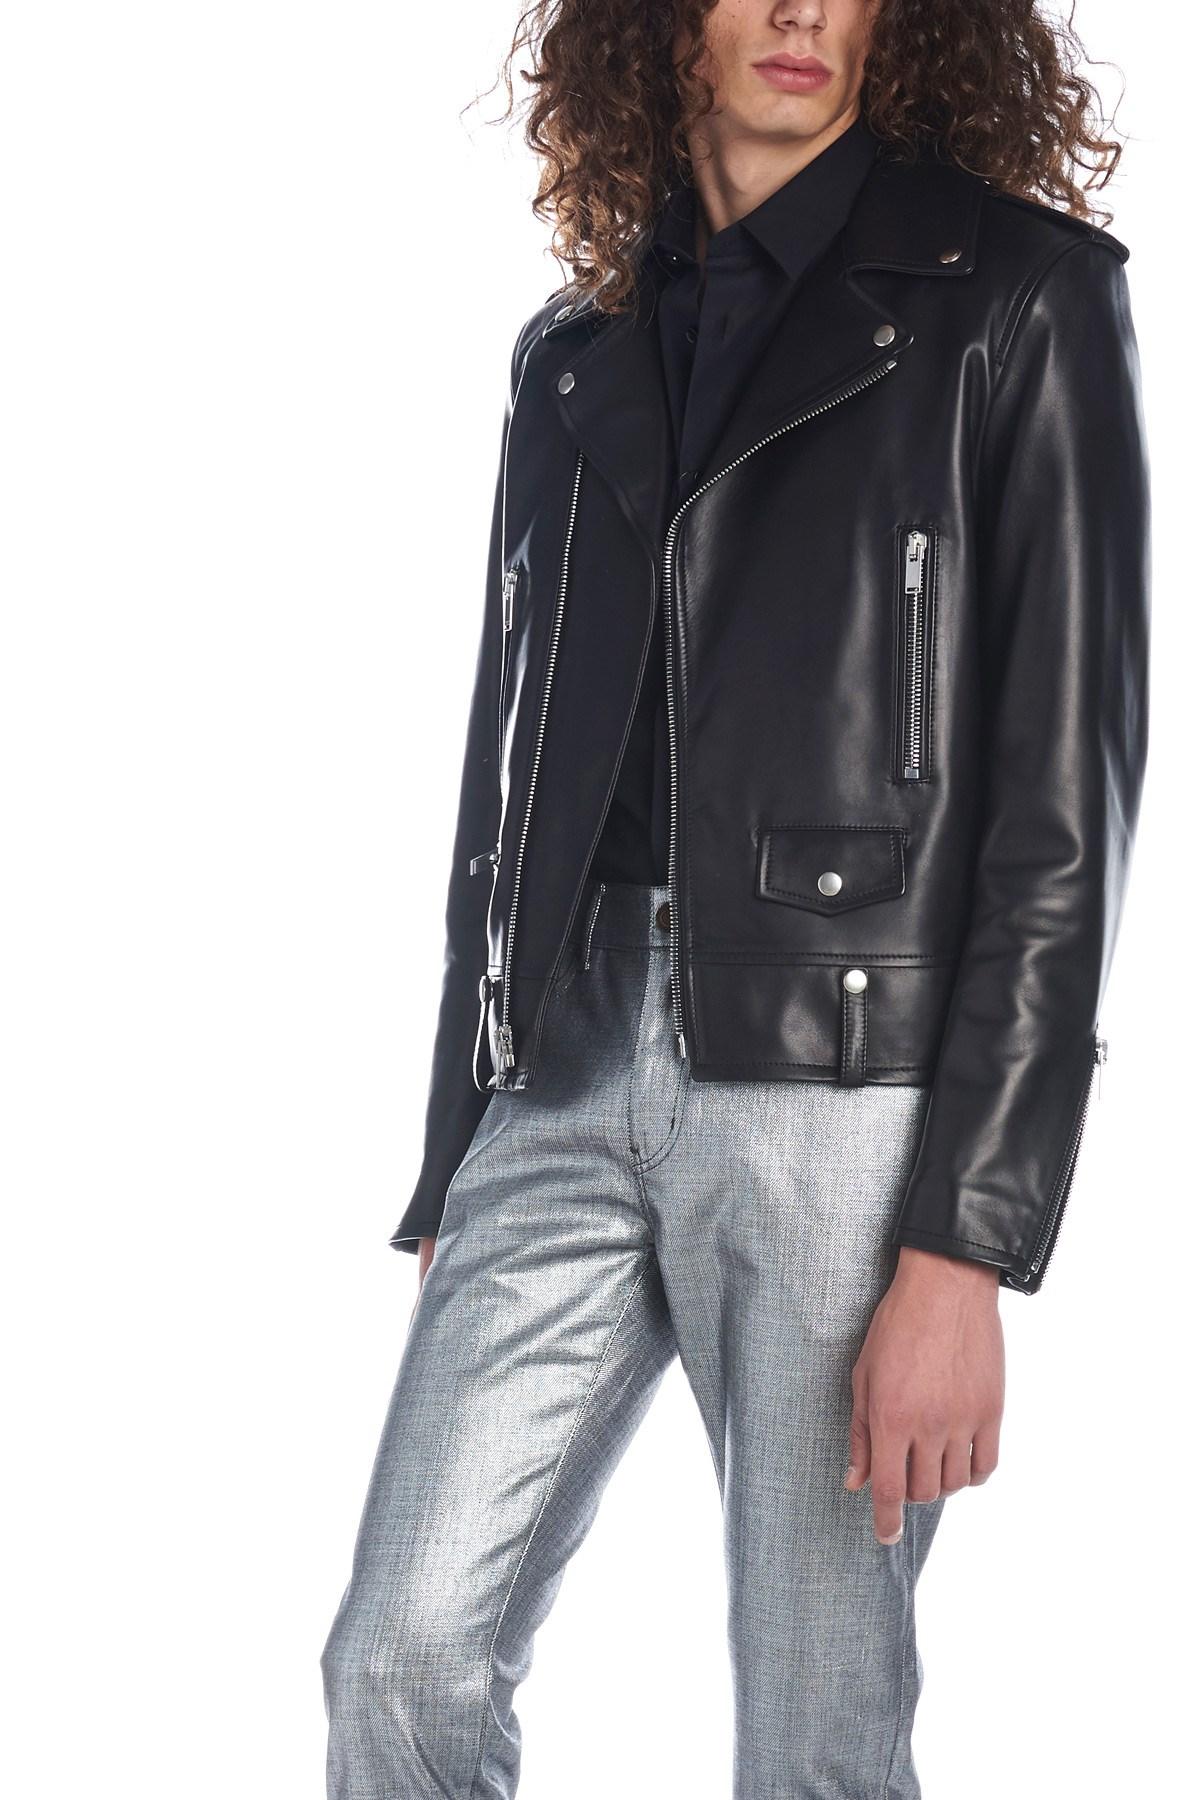 Saint Laurent Mens Classic Black Leather Motorcycle Biker Jacket Size 54 2